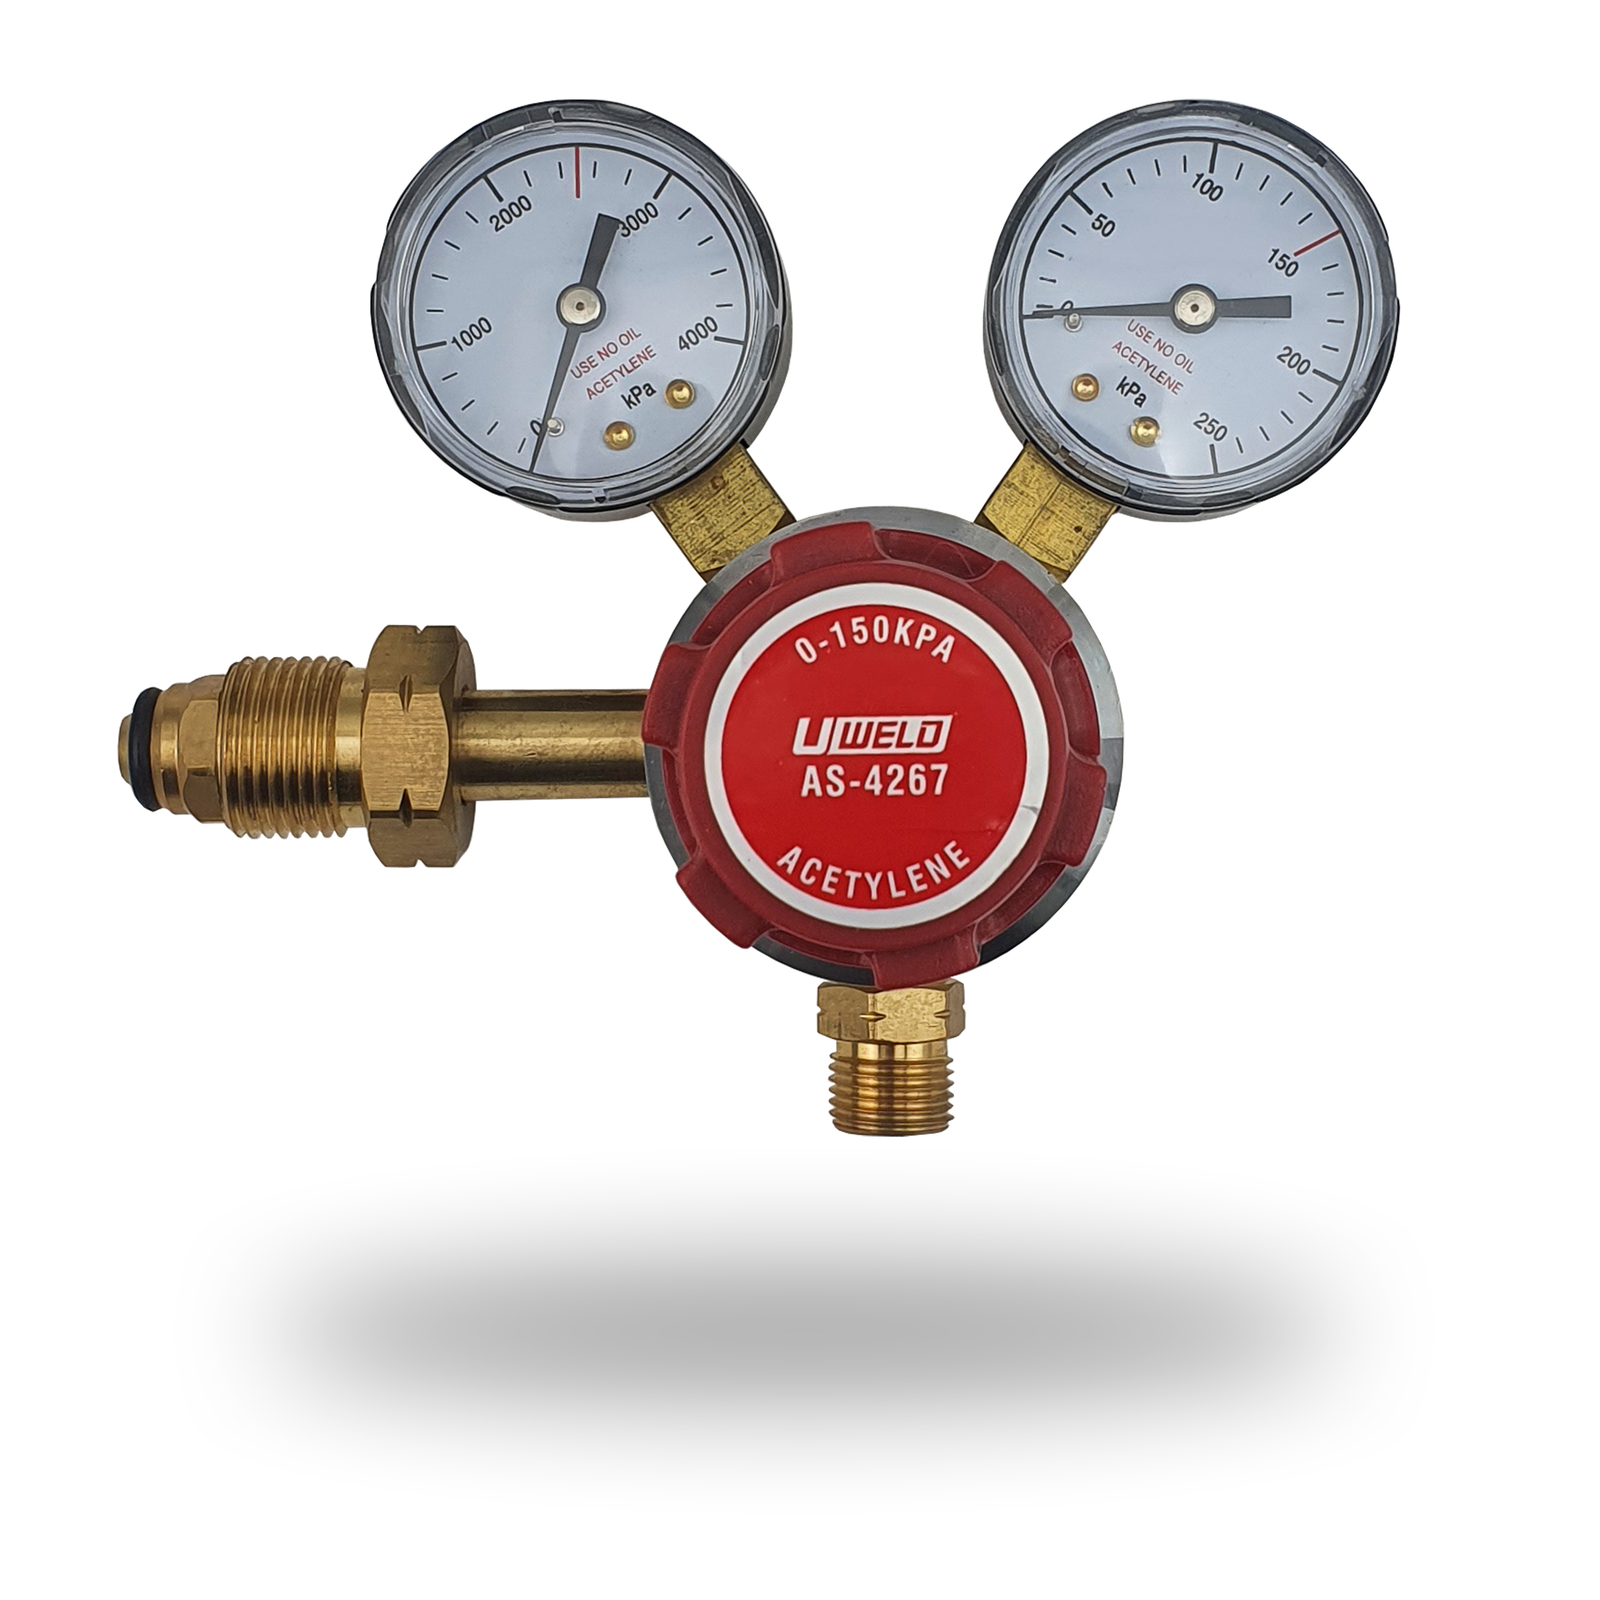 UWELD Acetylene Regulator / Flow Meter 0-150 KPA